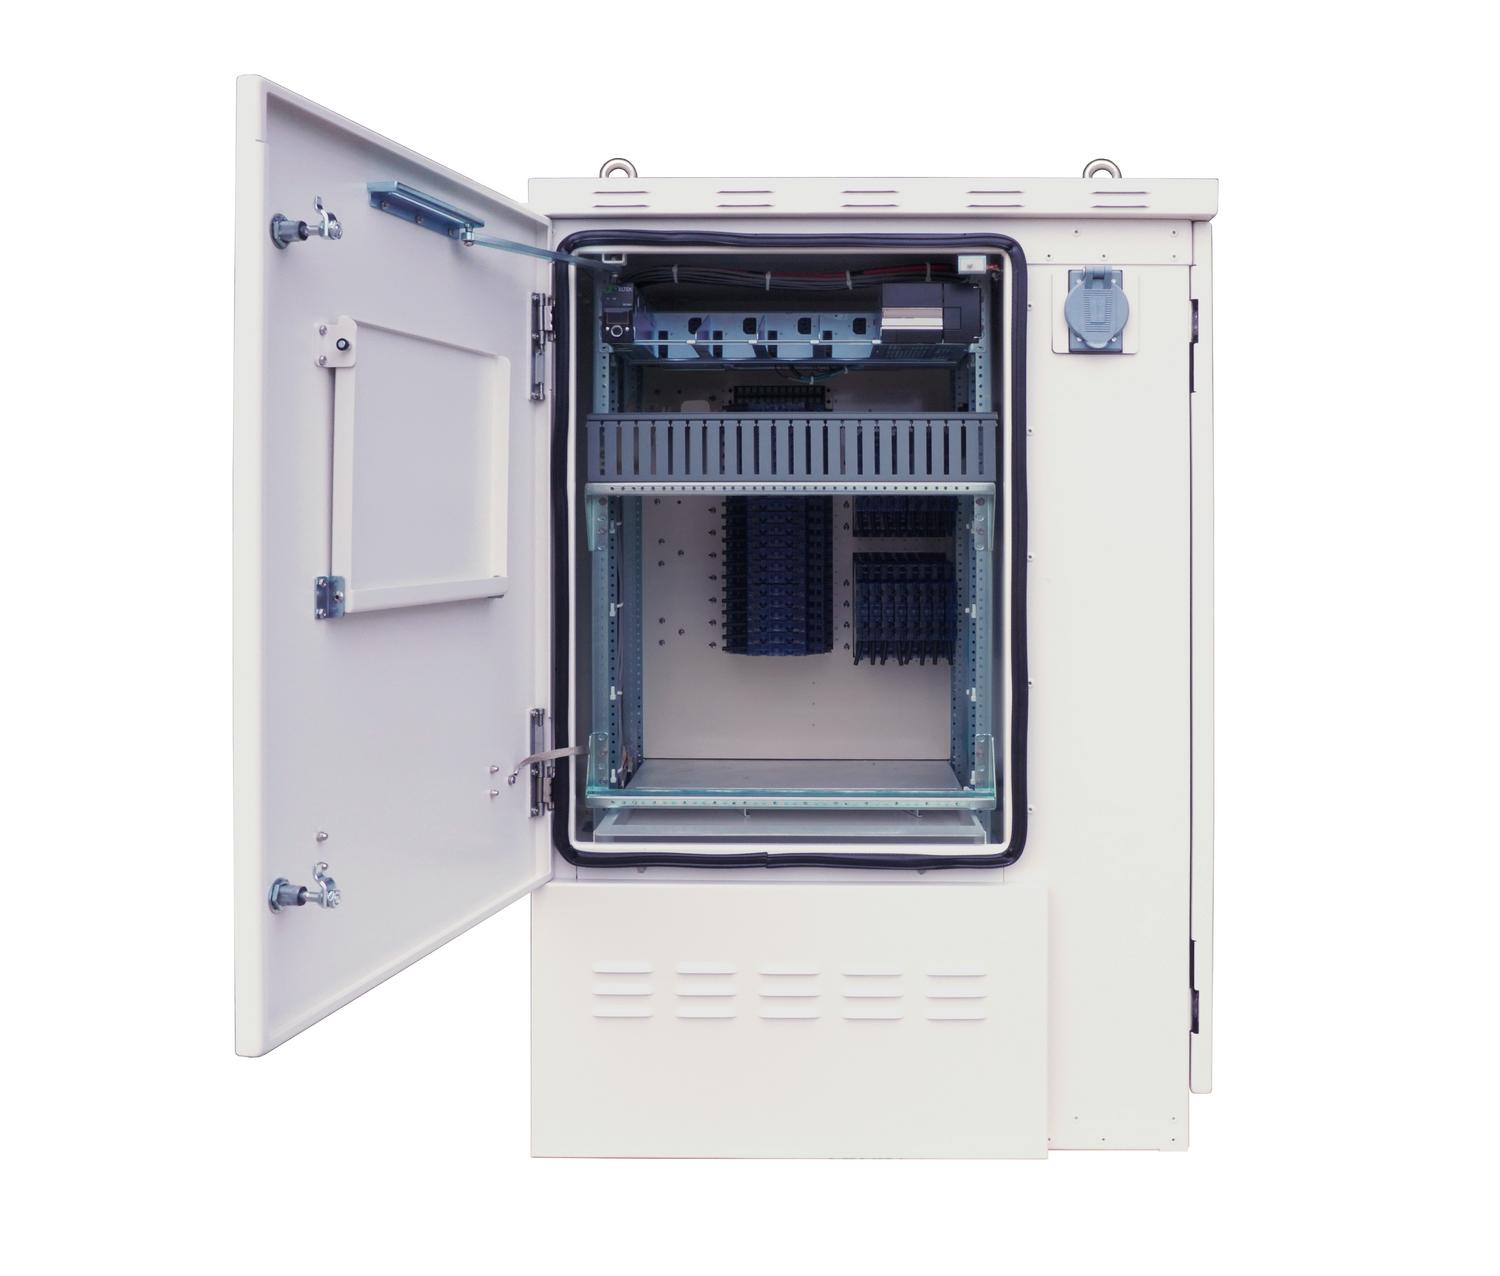 Front View of FieldSmart Fiber Active Cabinet (FAC) 3200 With Door Open